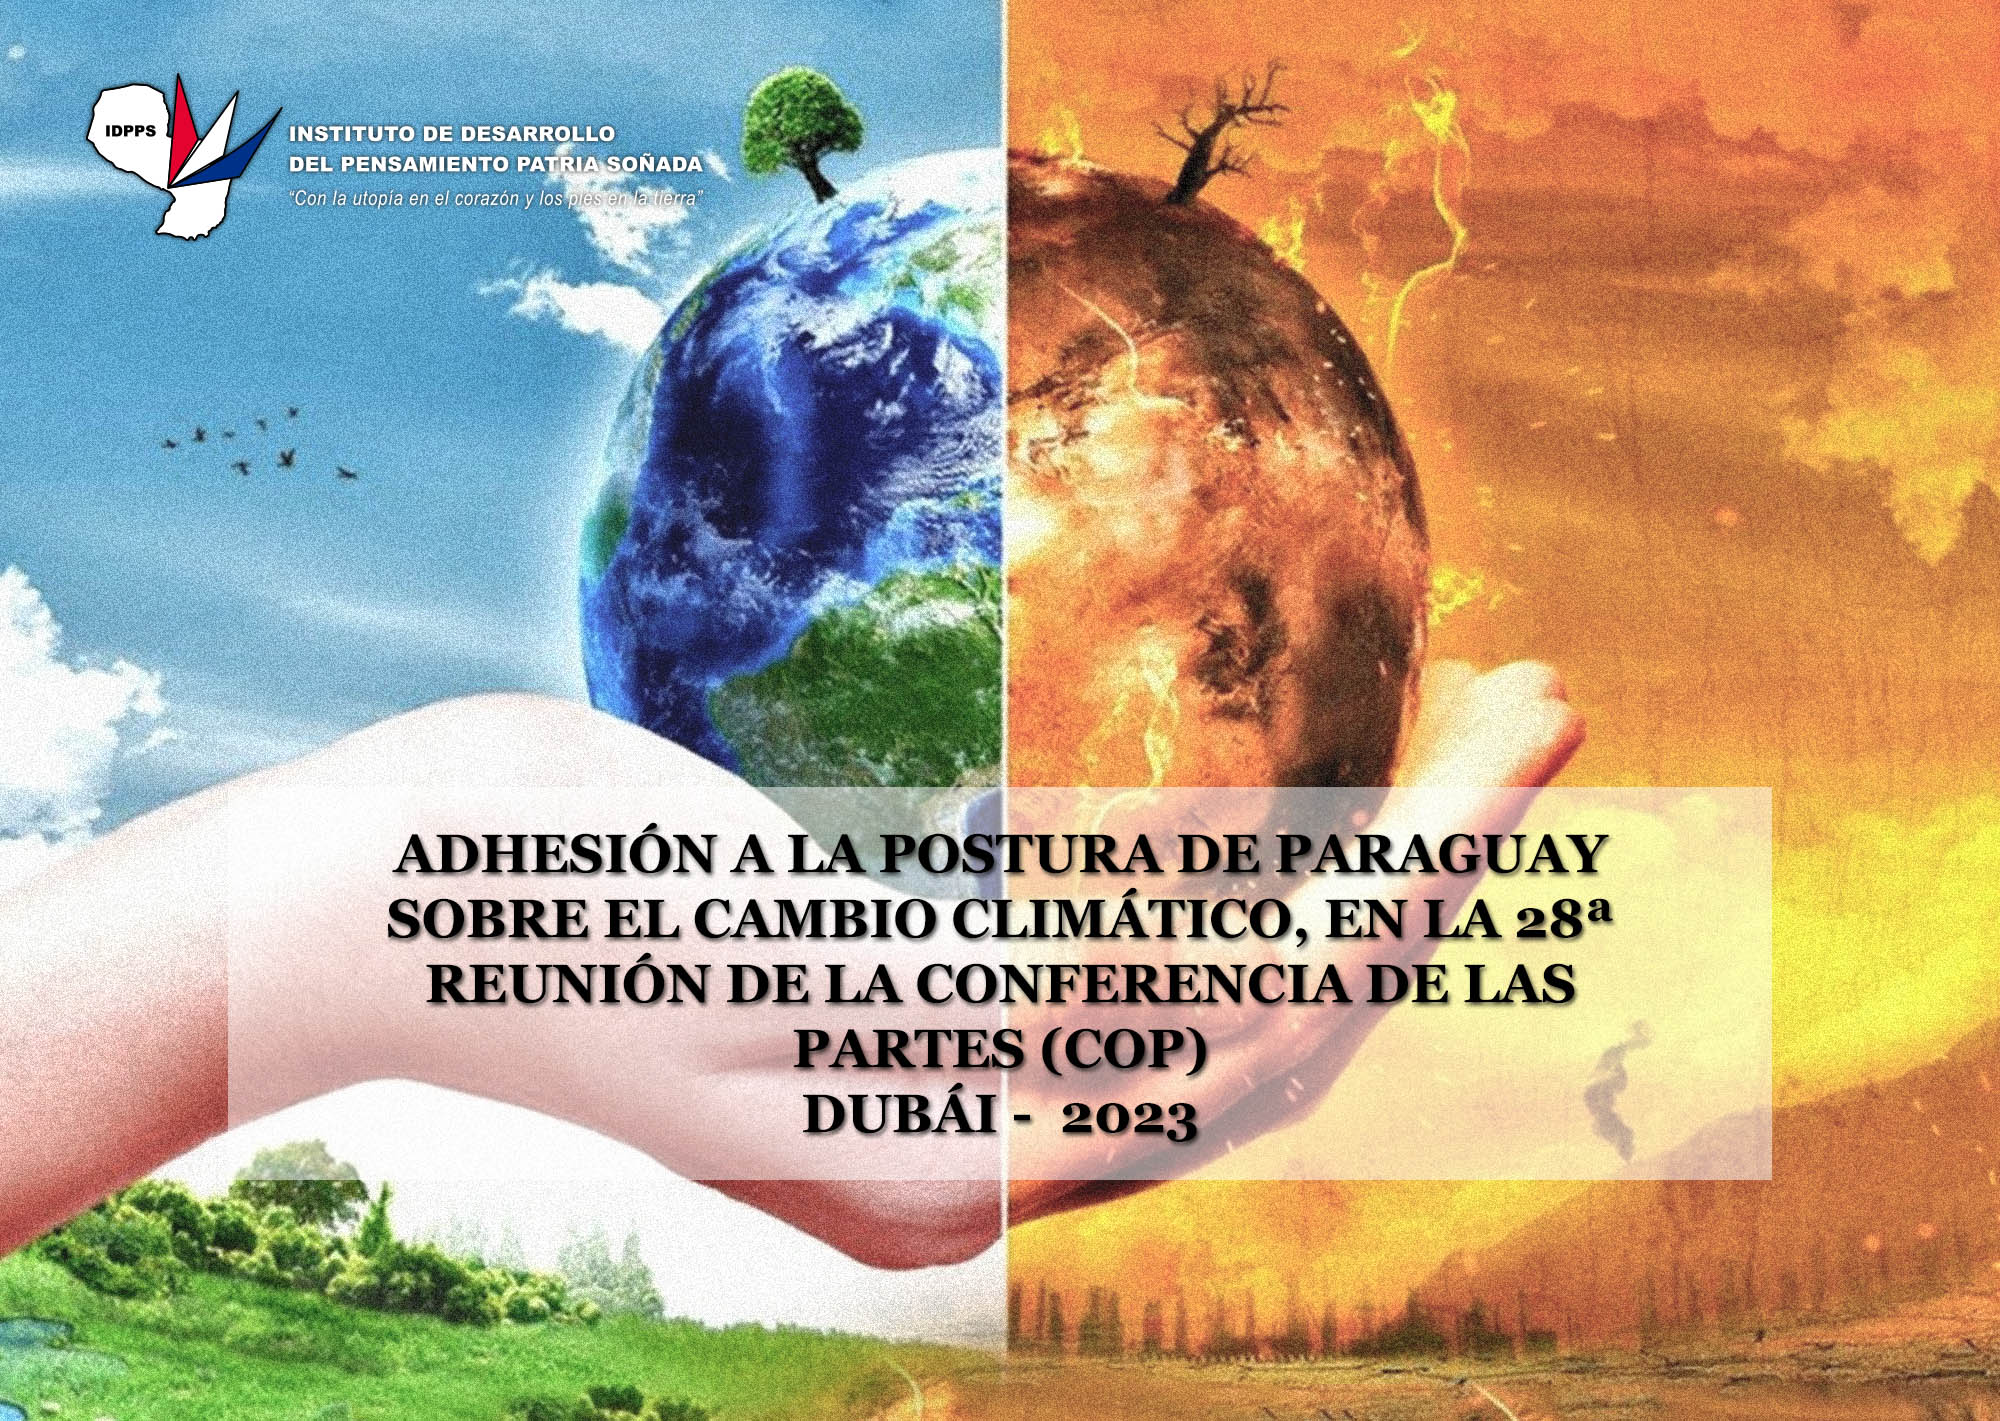 El IDPPS se adhiere a la postura de Paraguay sobre cambio climático, en la 28ª Reunión de la COP